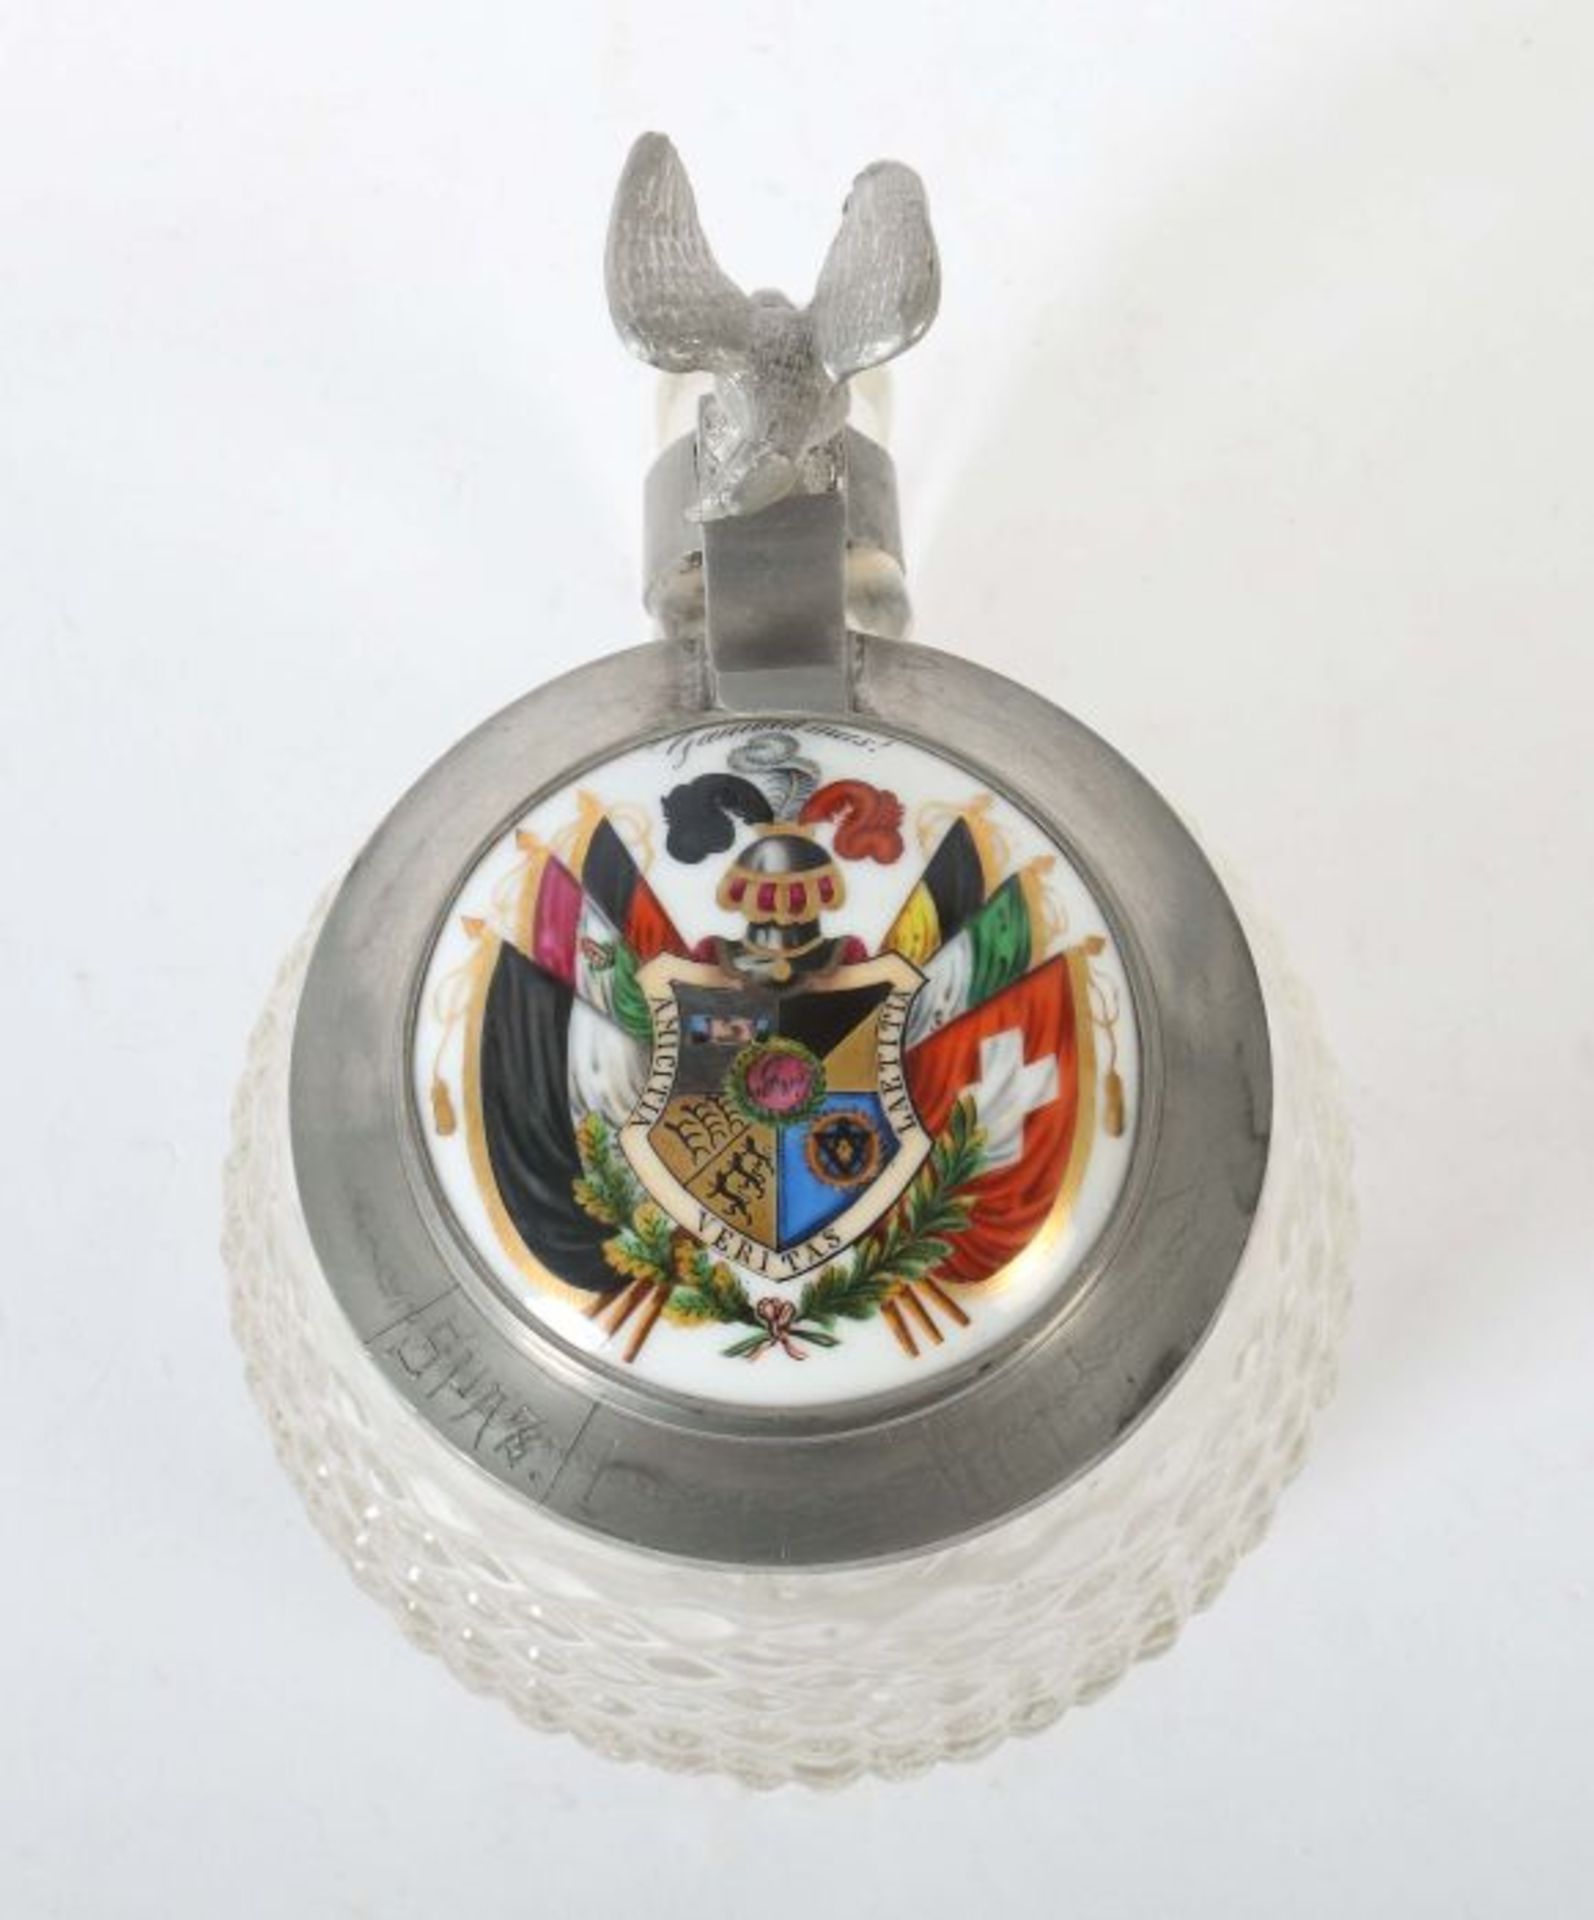 Tübinger Igel Klarglas mit Rautenrelief, Zinndeckel mit Porzellaneinsatz, darauf Studentika-Wappen - Bild 2 aus 3